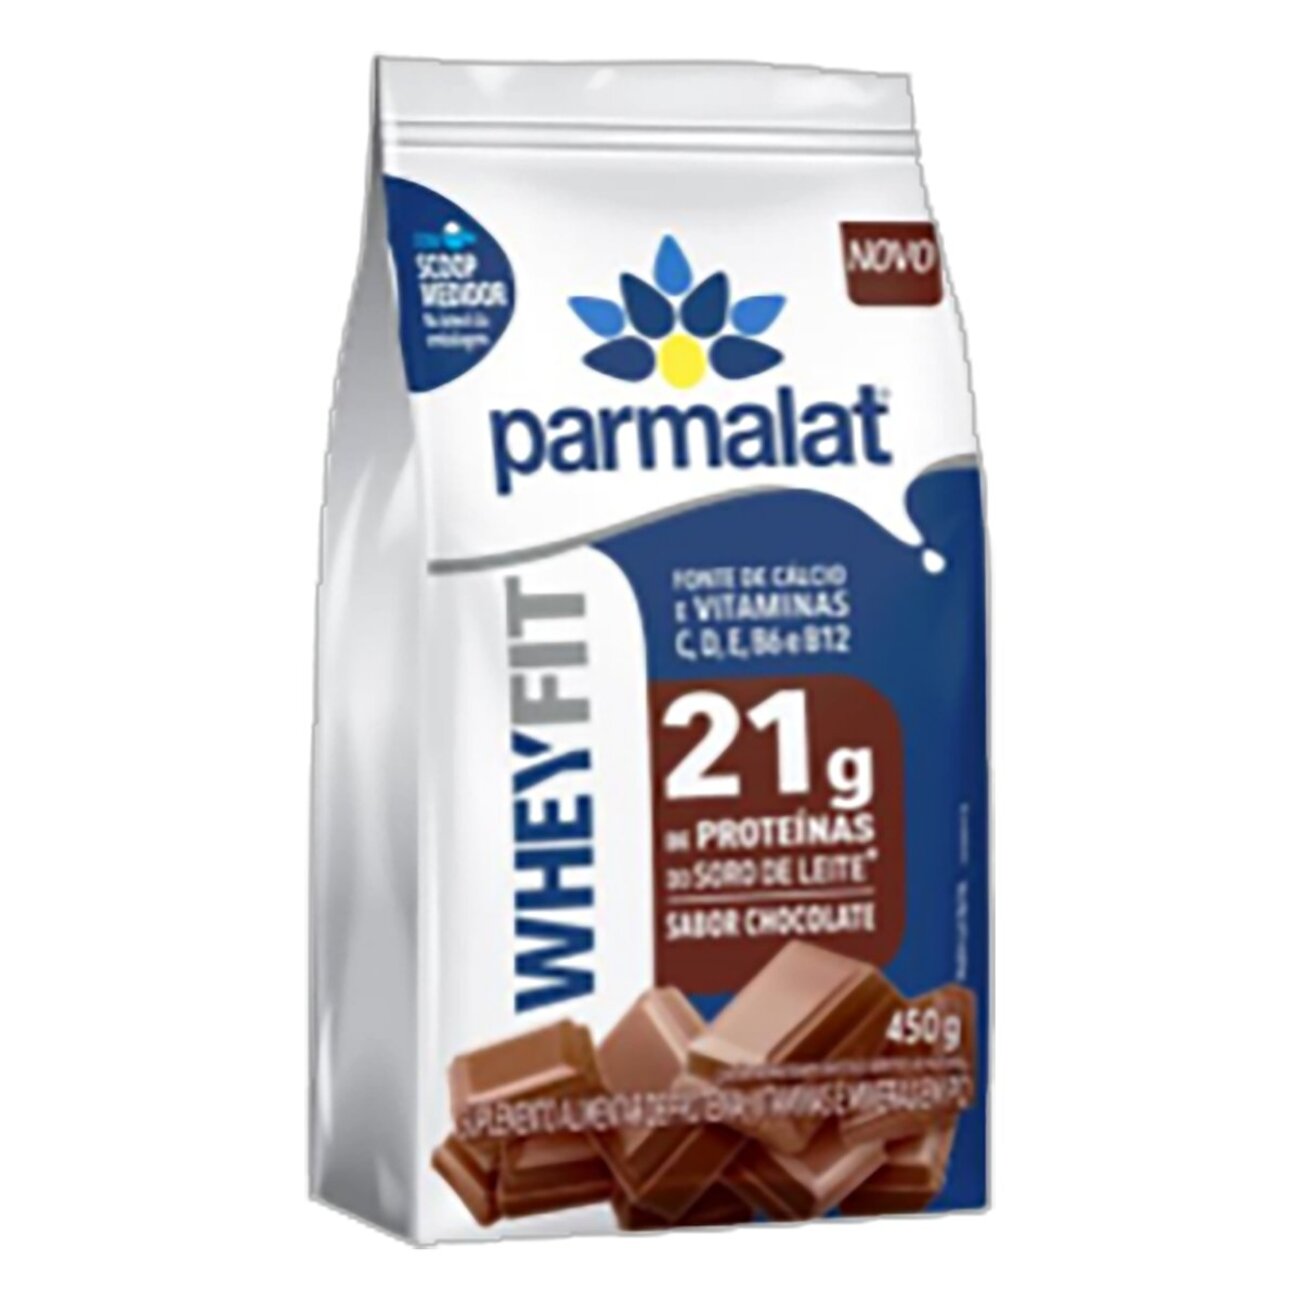 Suplemento Alimentar em P Vitaminas, Mineral e 21g de Protenas do Soro de Leite Chocolate Parmalat WheyFit Pacote 450g